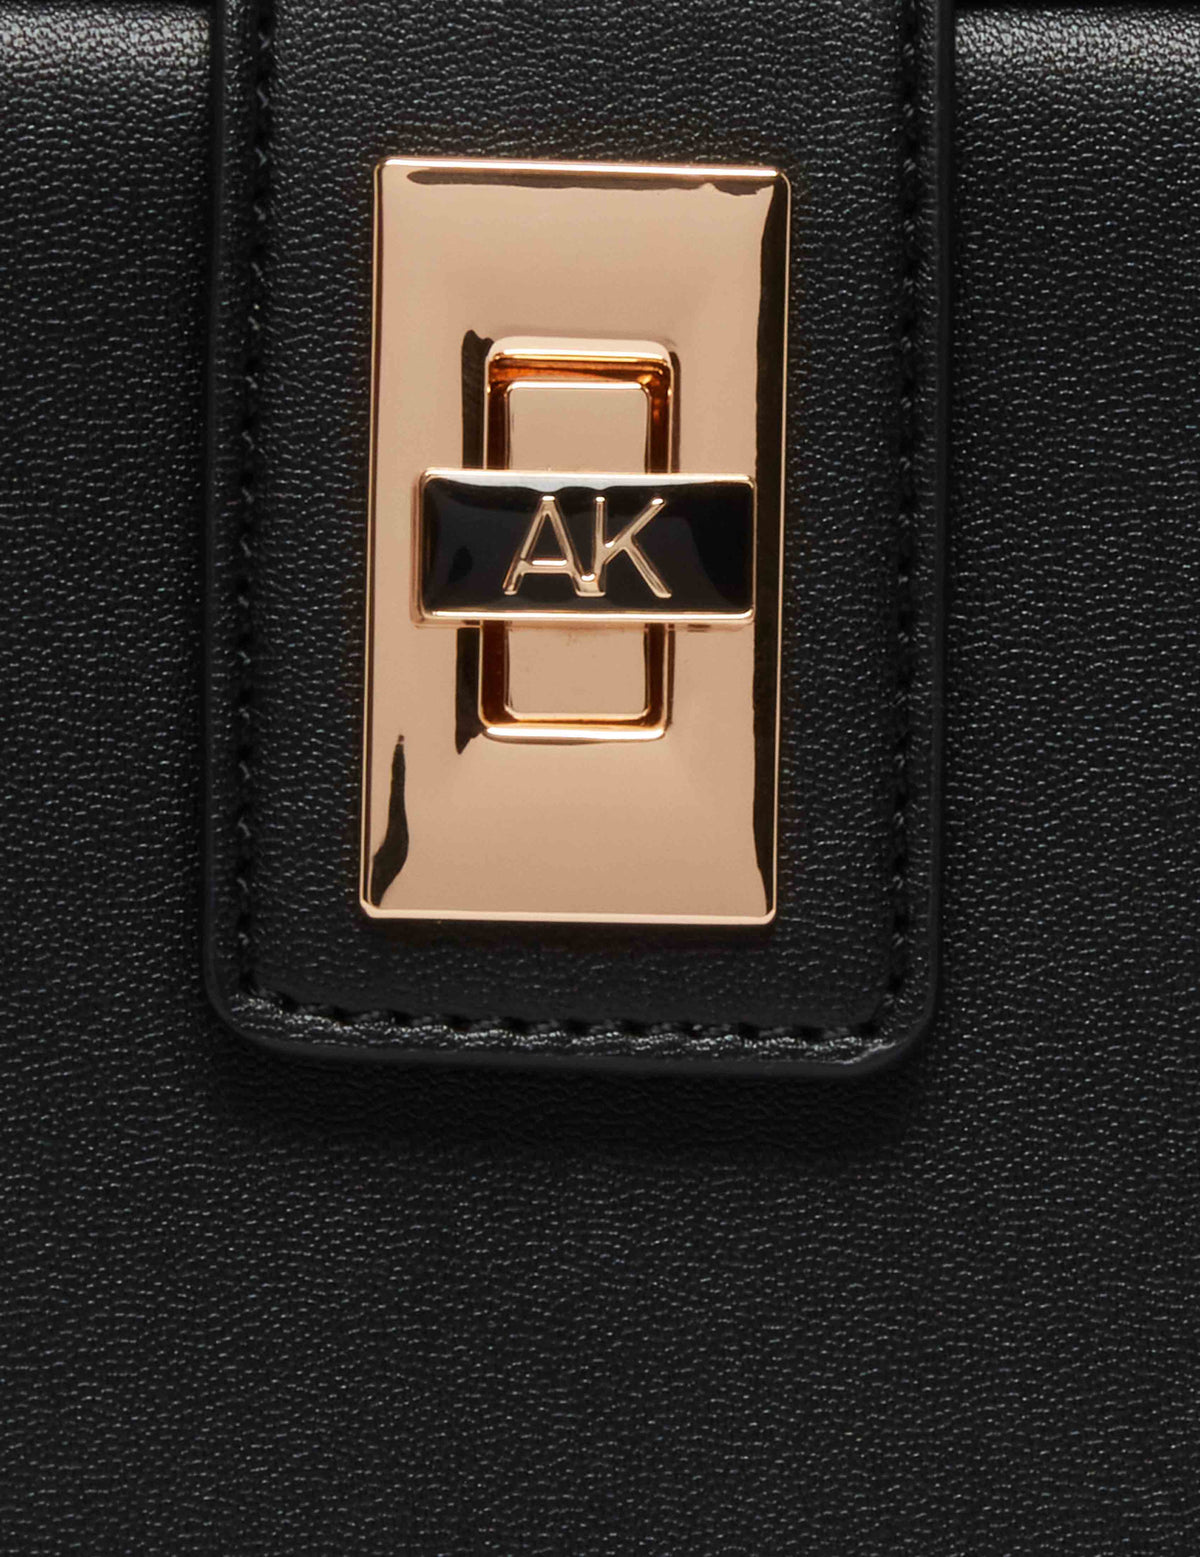 Anne Klein  Convertible Box Bag With AK Enamel Turn Lock